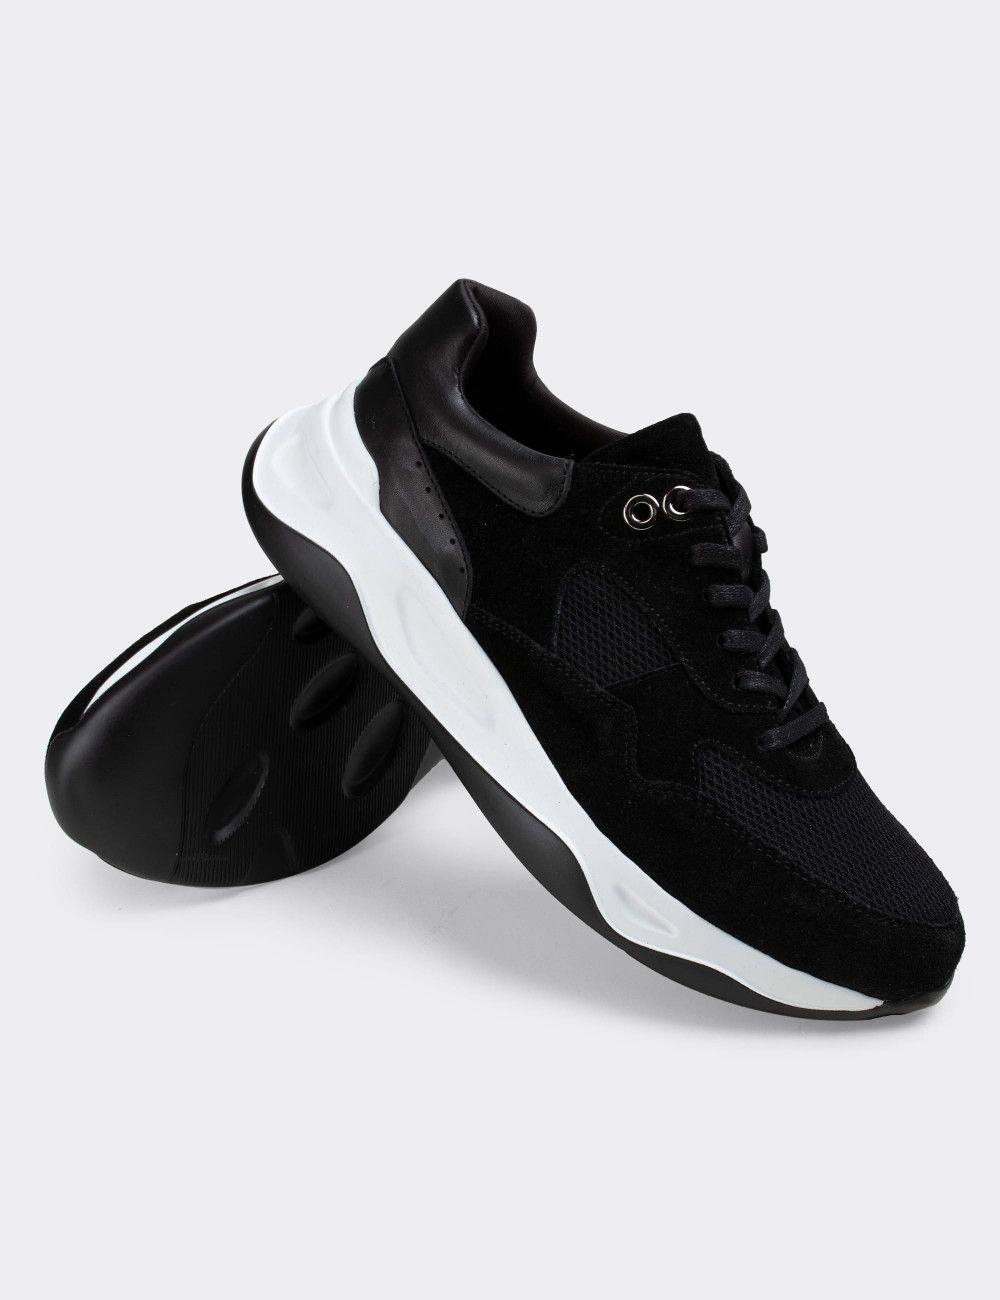 Hakiki Süet Siyah Sneaker Erkek Ayakkabı - 01818MSYHE01